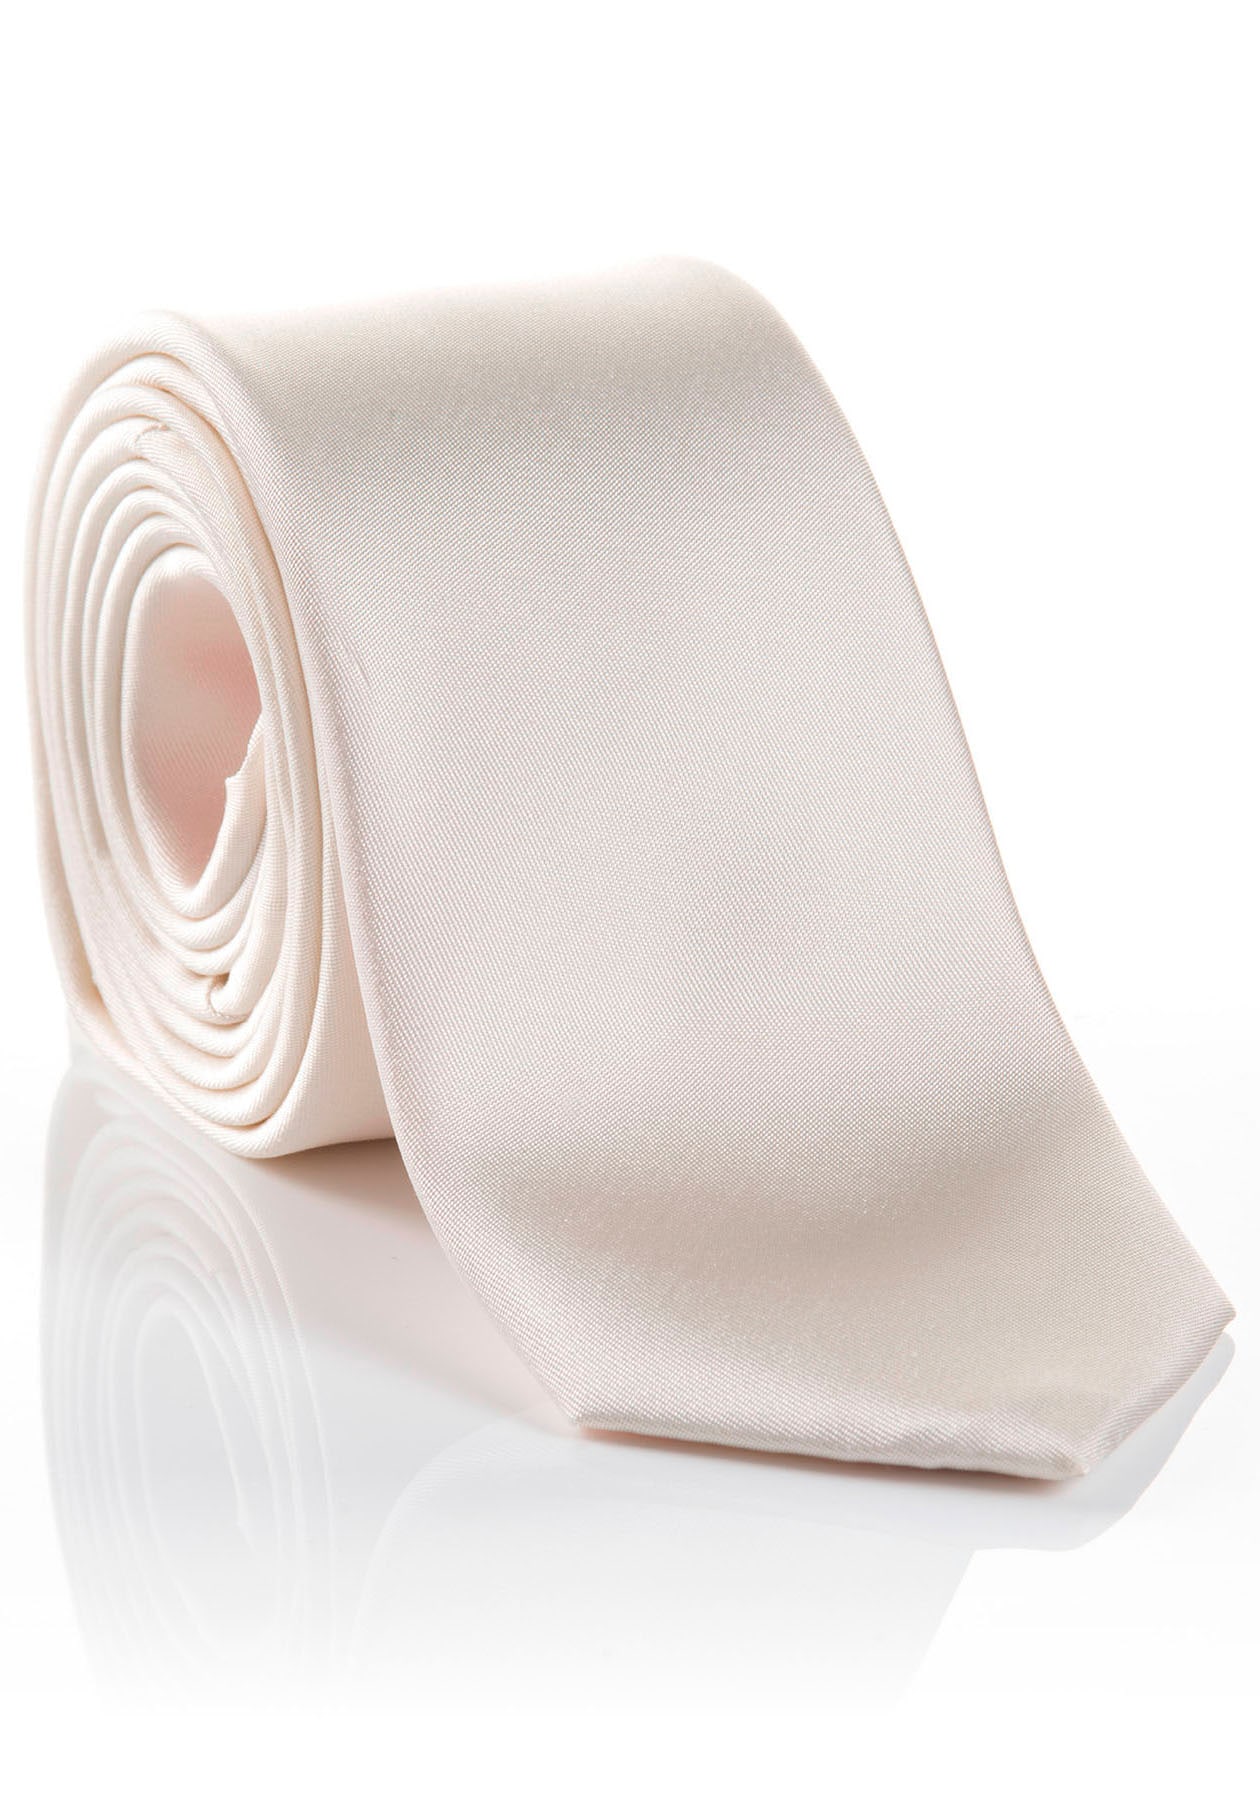 MONTI Krawatte »LIVIO«, Hochwertig Seidenkrawatte hohem verarbeitete Tragekomfort kaufen online mit